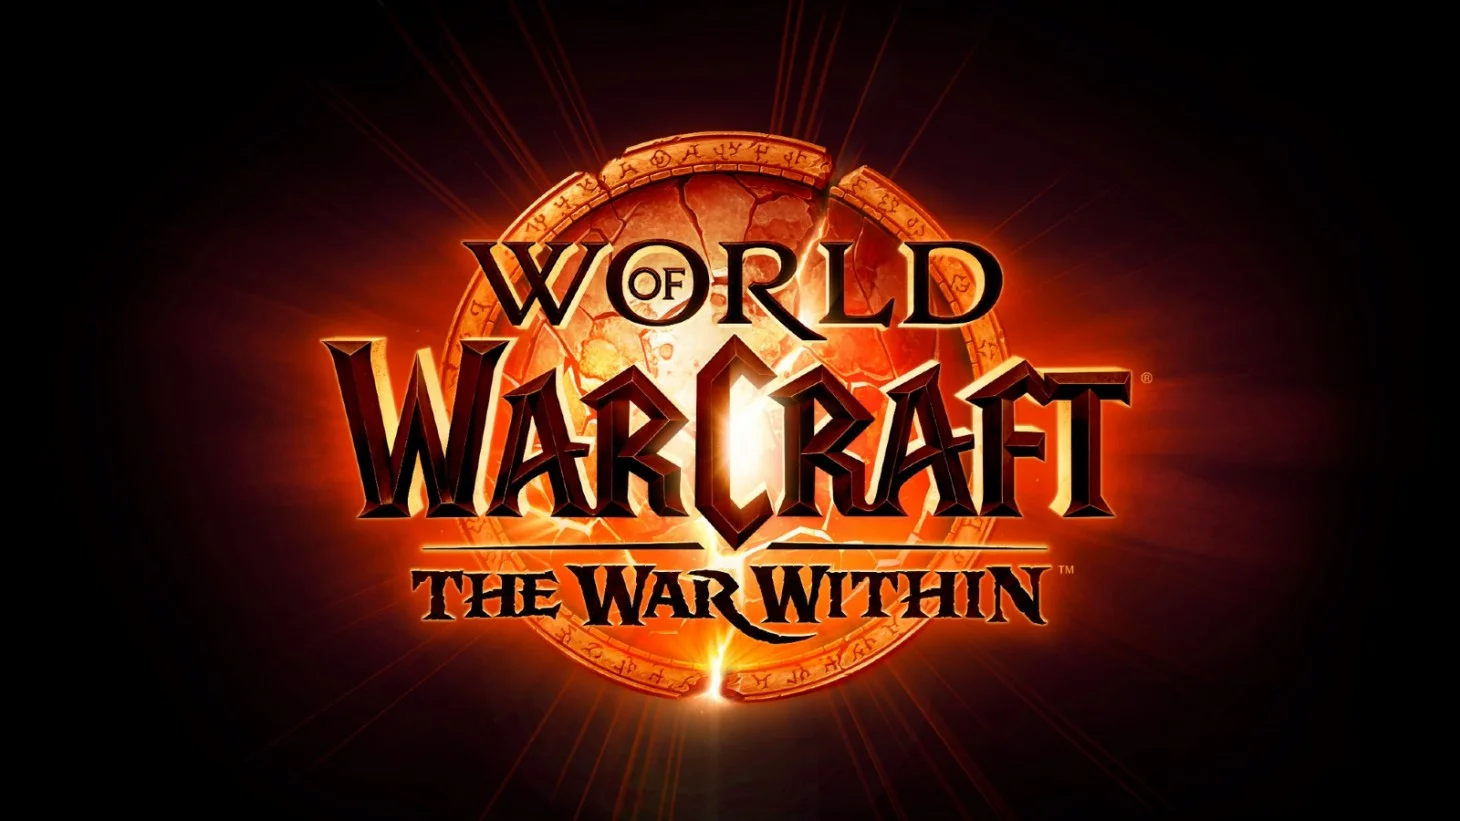 Blizzard опубликовала новый трейлер World of Warcraft: The War Within, в котором сообщила дату релиза DLC - 26 августа